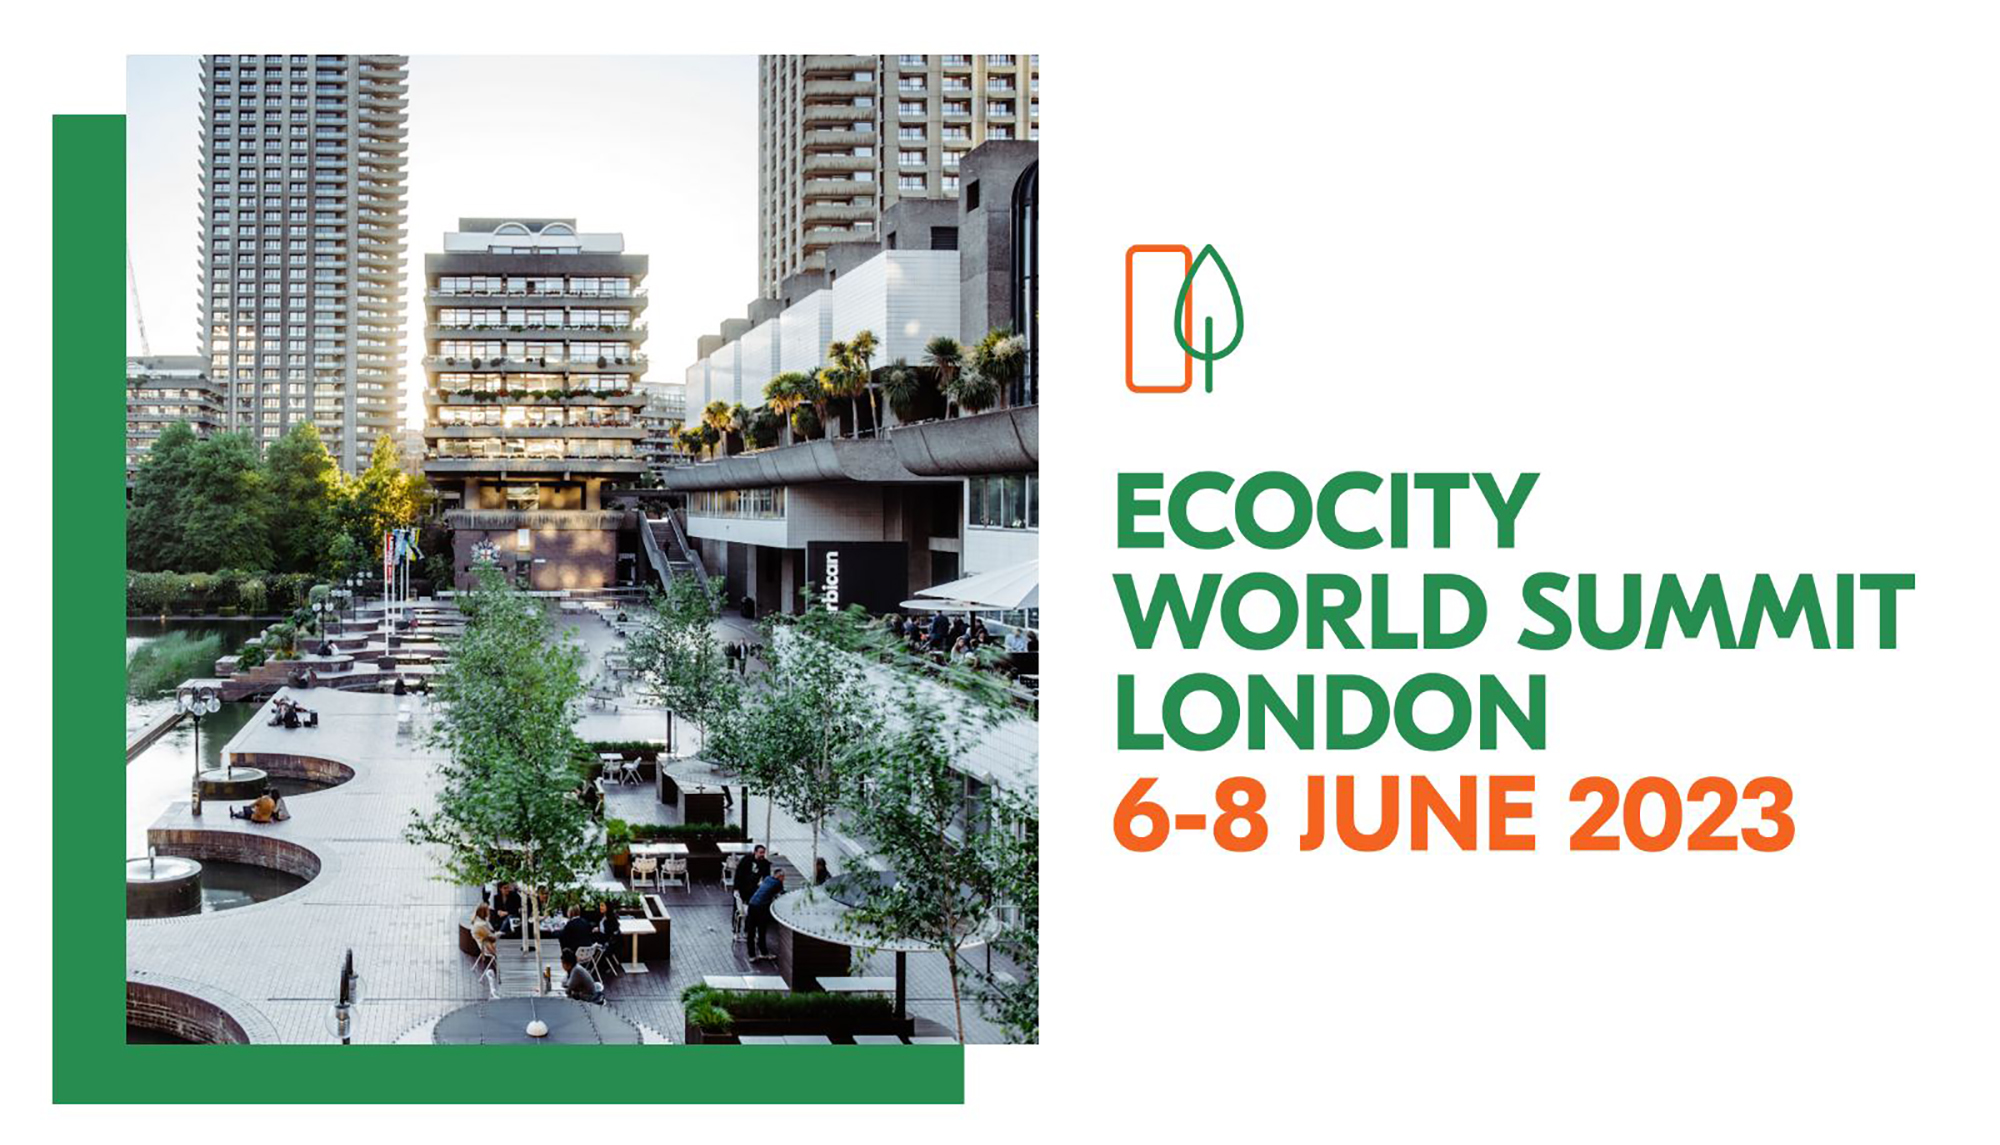 Ecocity World Summit 2023 Sustainability Events